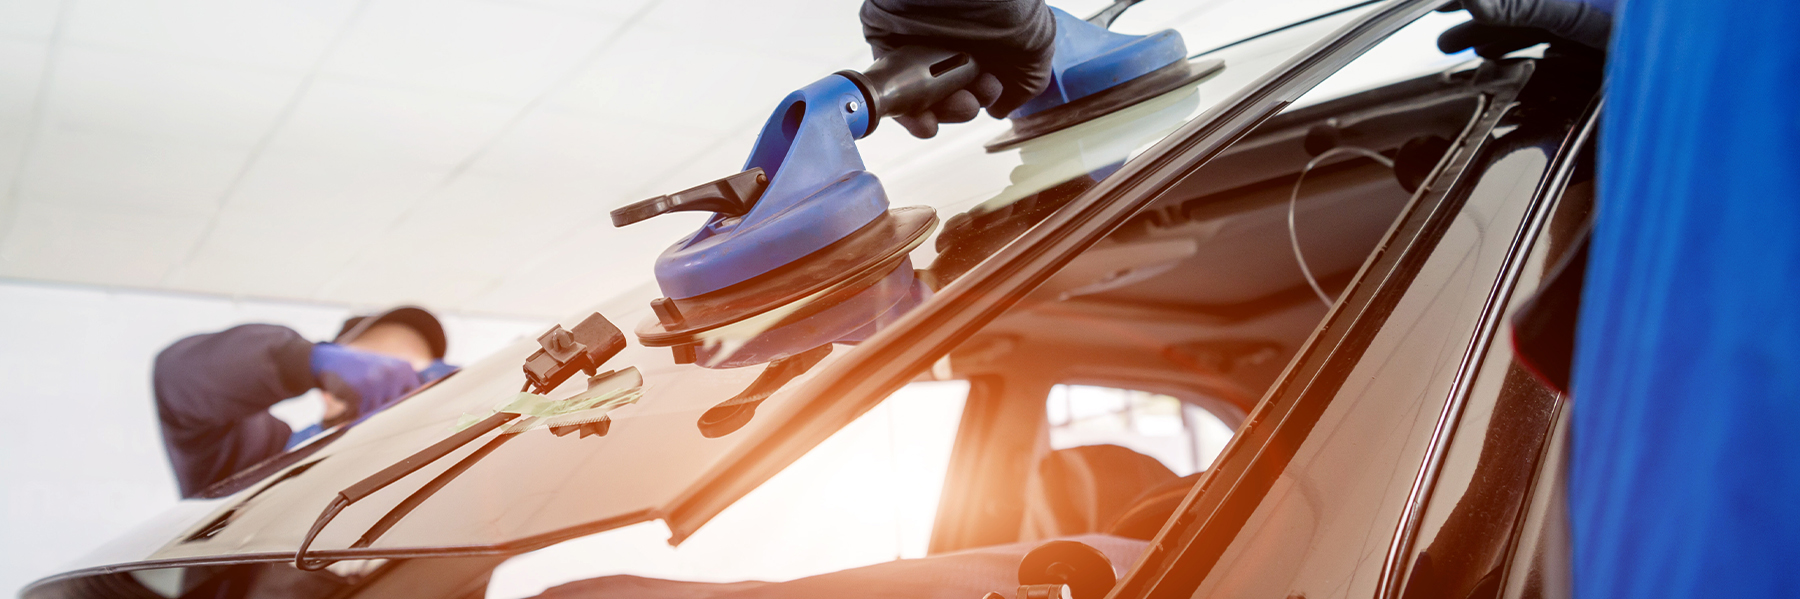 Autoglaser ersetzen Windschutzscheibe eines Autos in der Autowerkstatt.